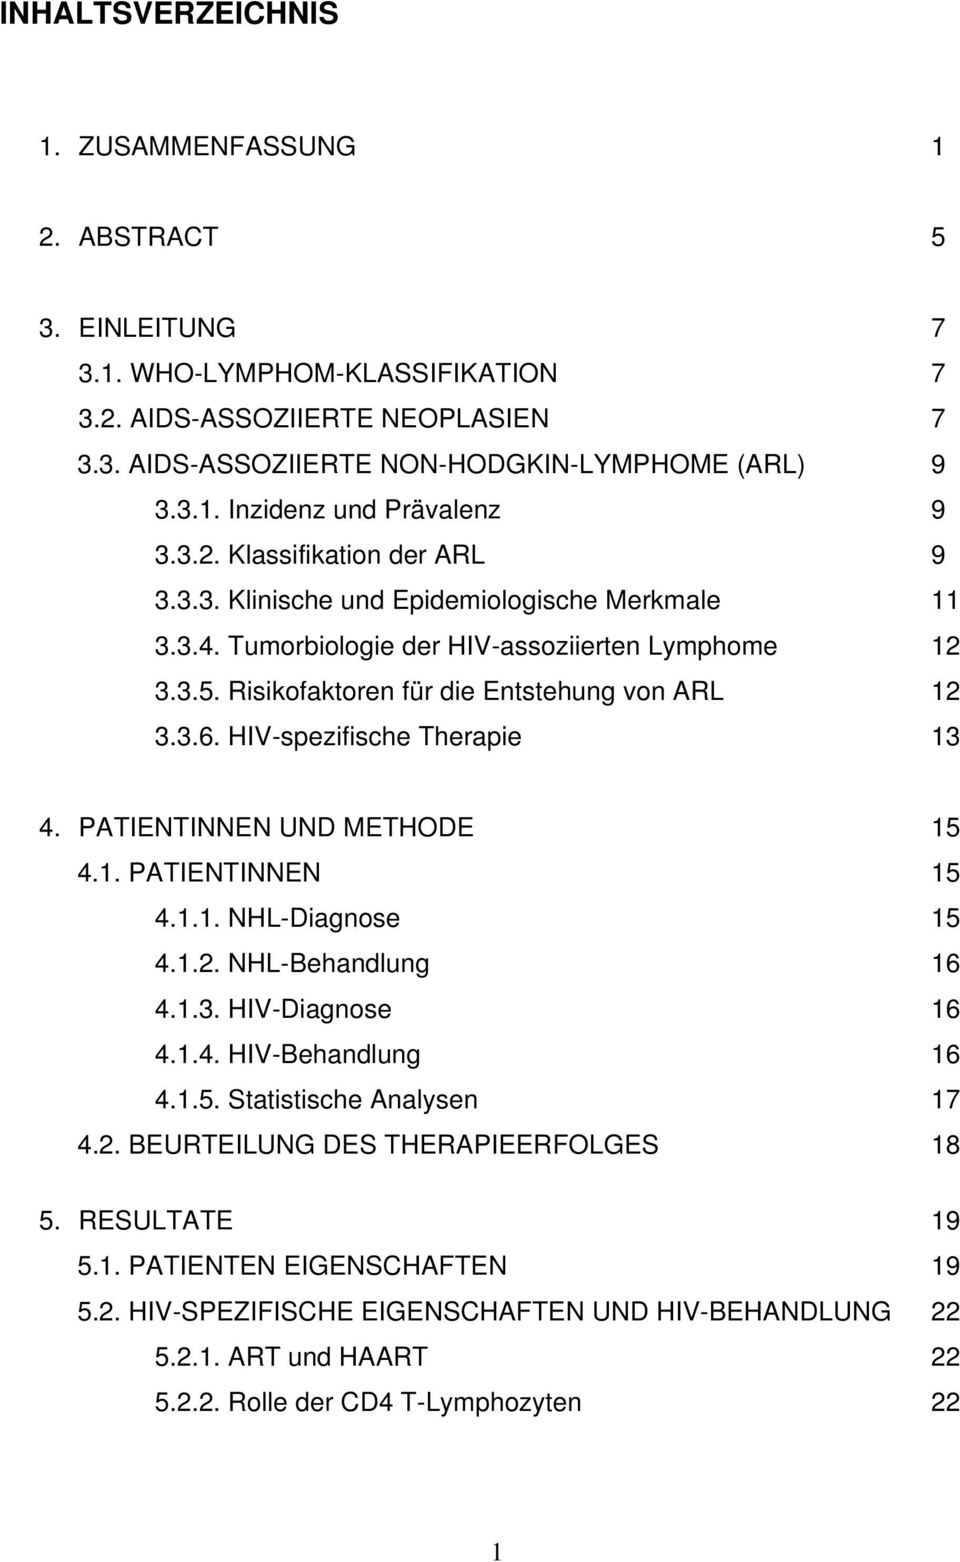 HIV-spezifische Therapie 13 4. PATIENTINNEN UND METHODE 15 4.1. PATIENTINNEN 15 4.1.1. NHL-Diagnose 15 4.1.2. NHL-Behandlung 16 4.1.3. HIV-Diagnose 16 4.1.4. HIV-Behandlung 16 4.1.5. Statistische Analysen 17 4.